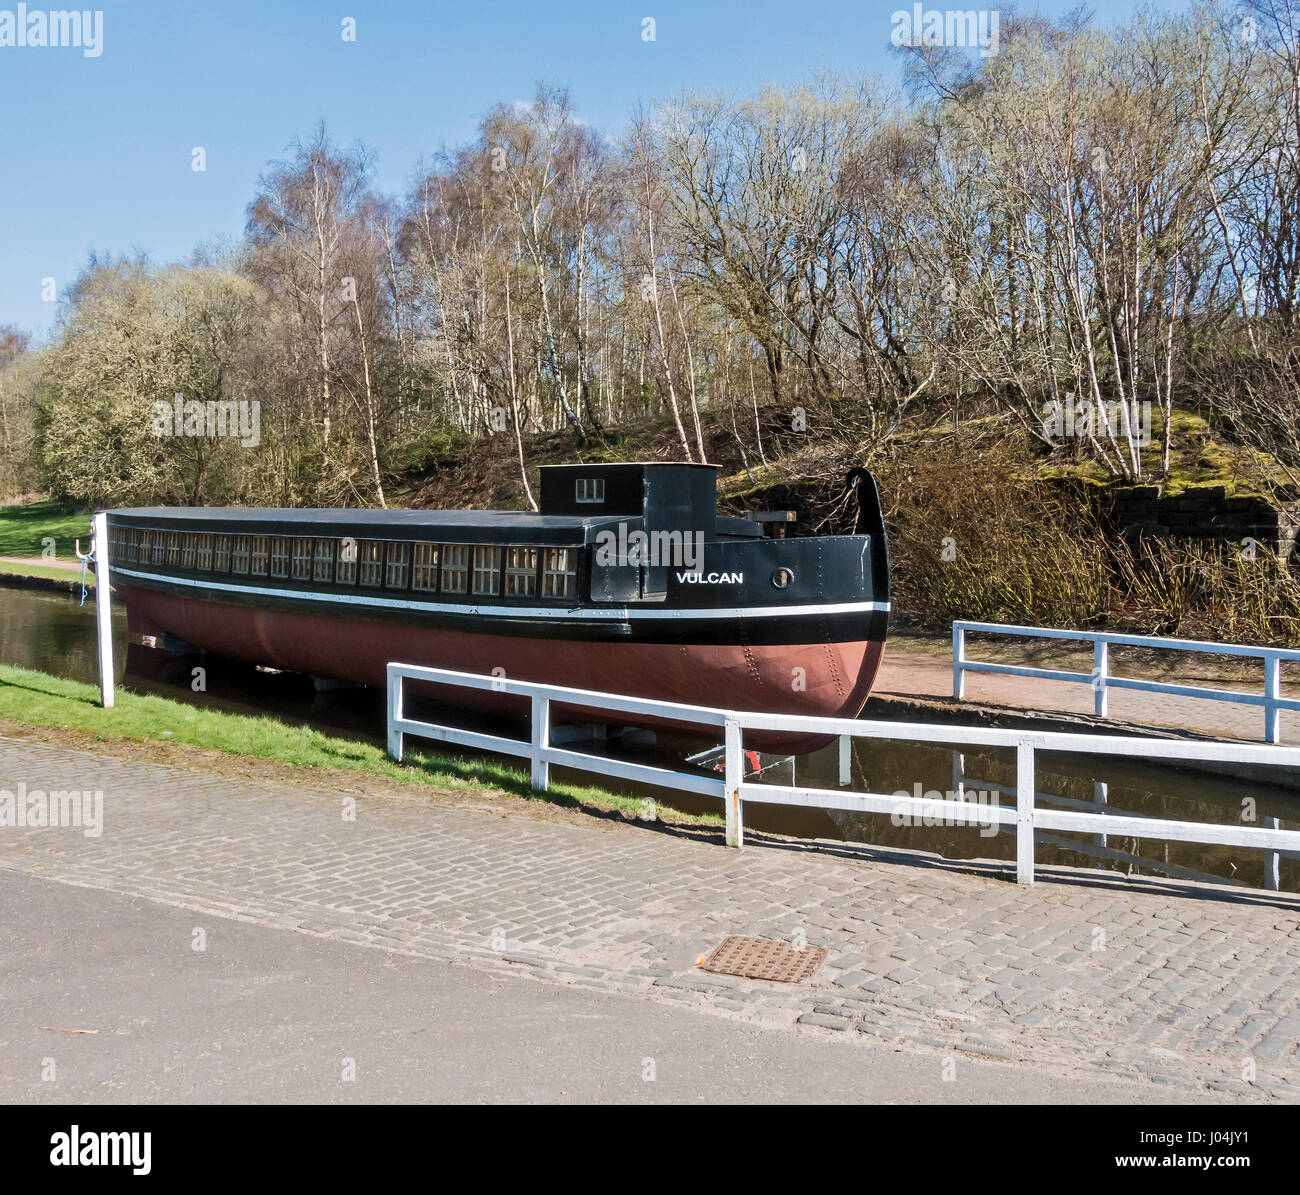 Canal barge à Vulcan Summerlee Museum of Scottish vie industrielle à Coatbridge North Lanarkshire Scotland UK Banque D'Images